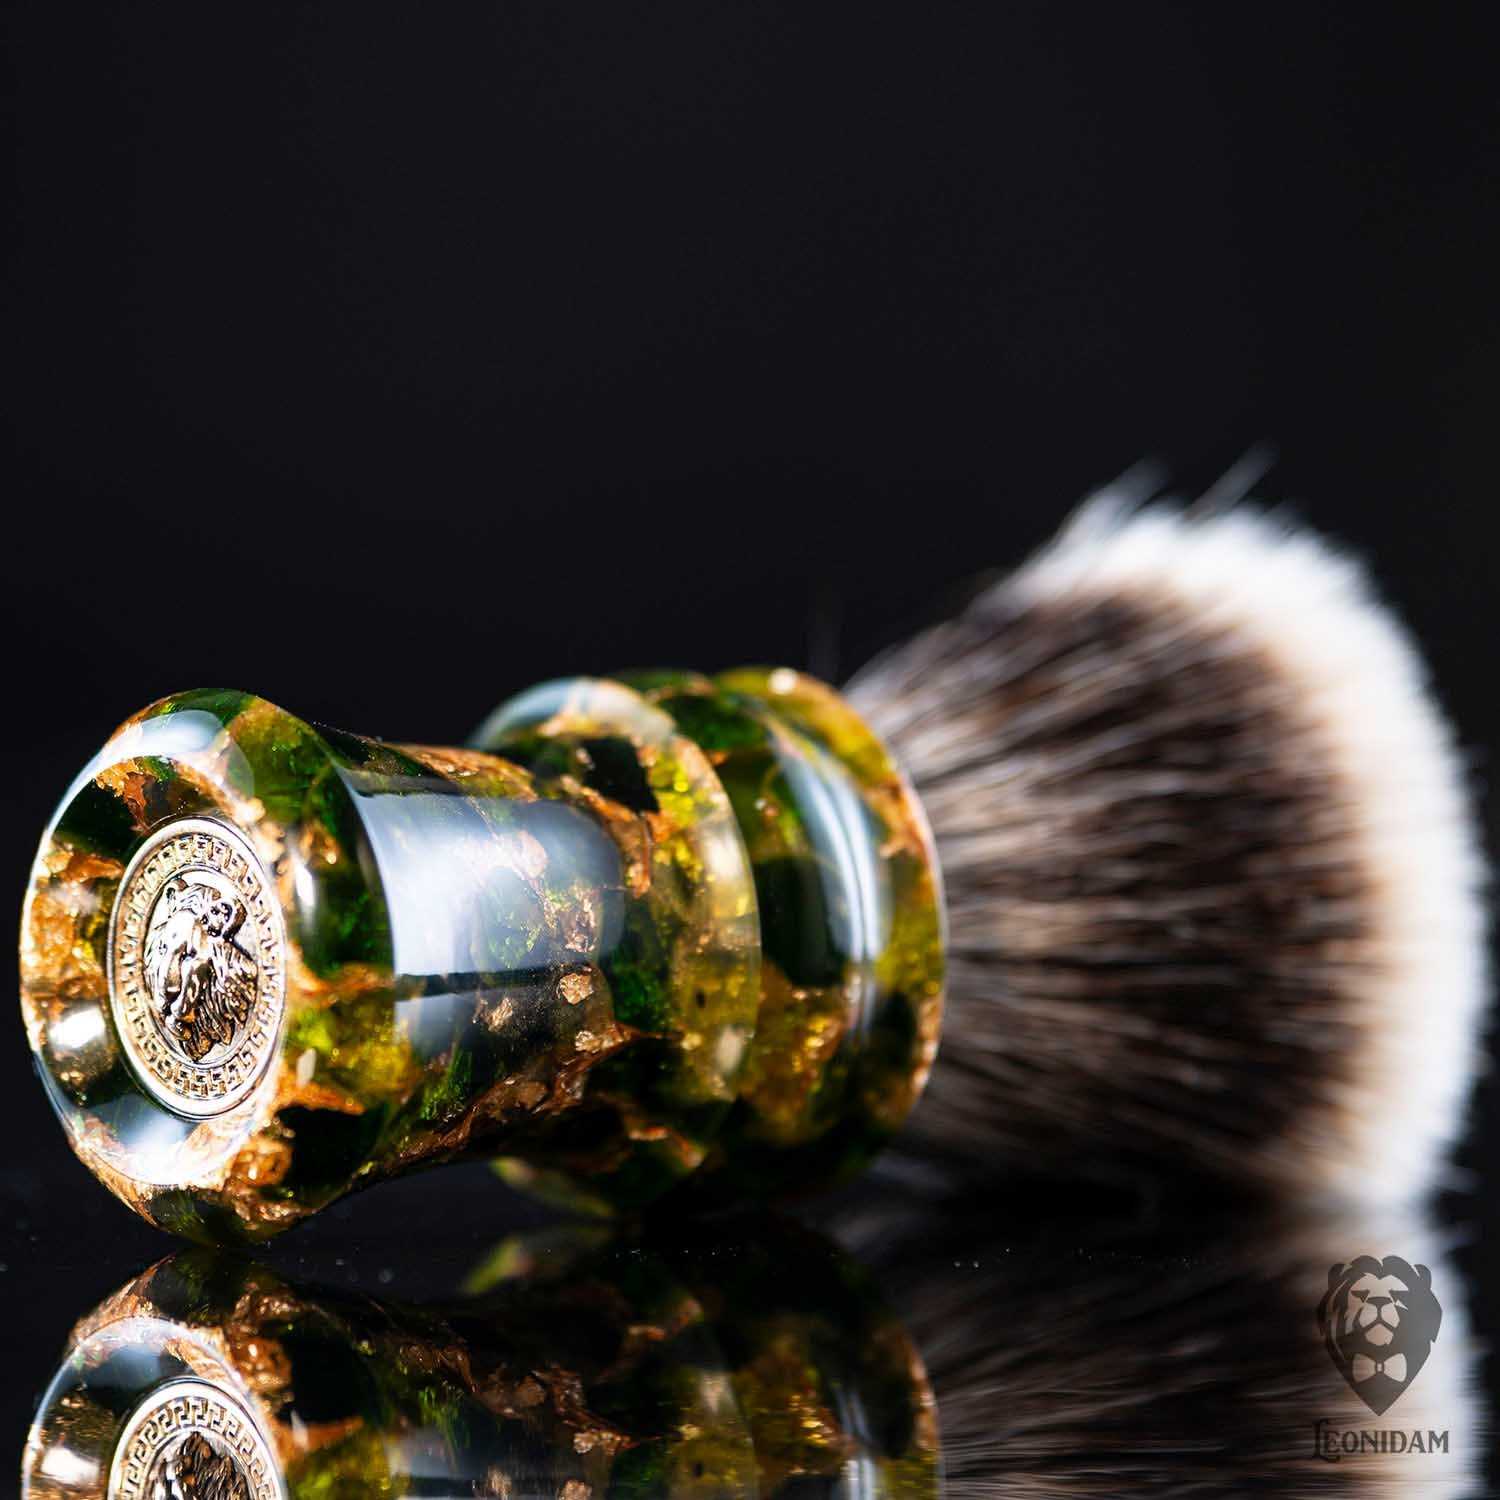 Handmade Shaving Brush "Vertigo" in polished green and gold resin.